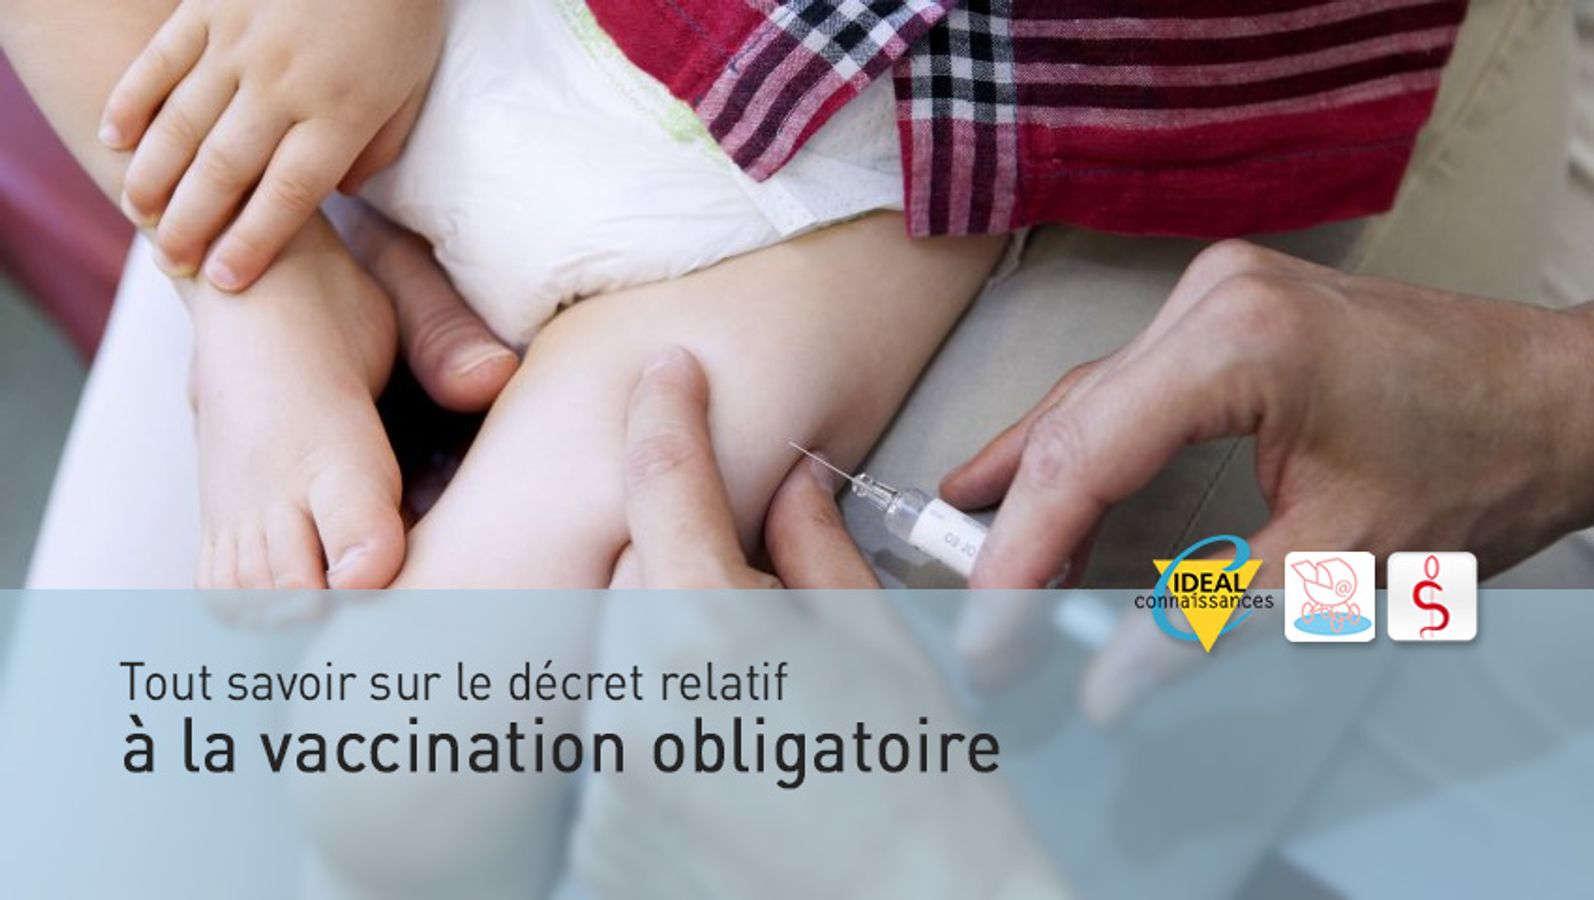 Tout savoir sur le décret relatif à la vaccination obligatoire